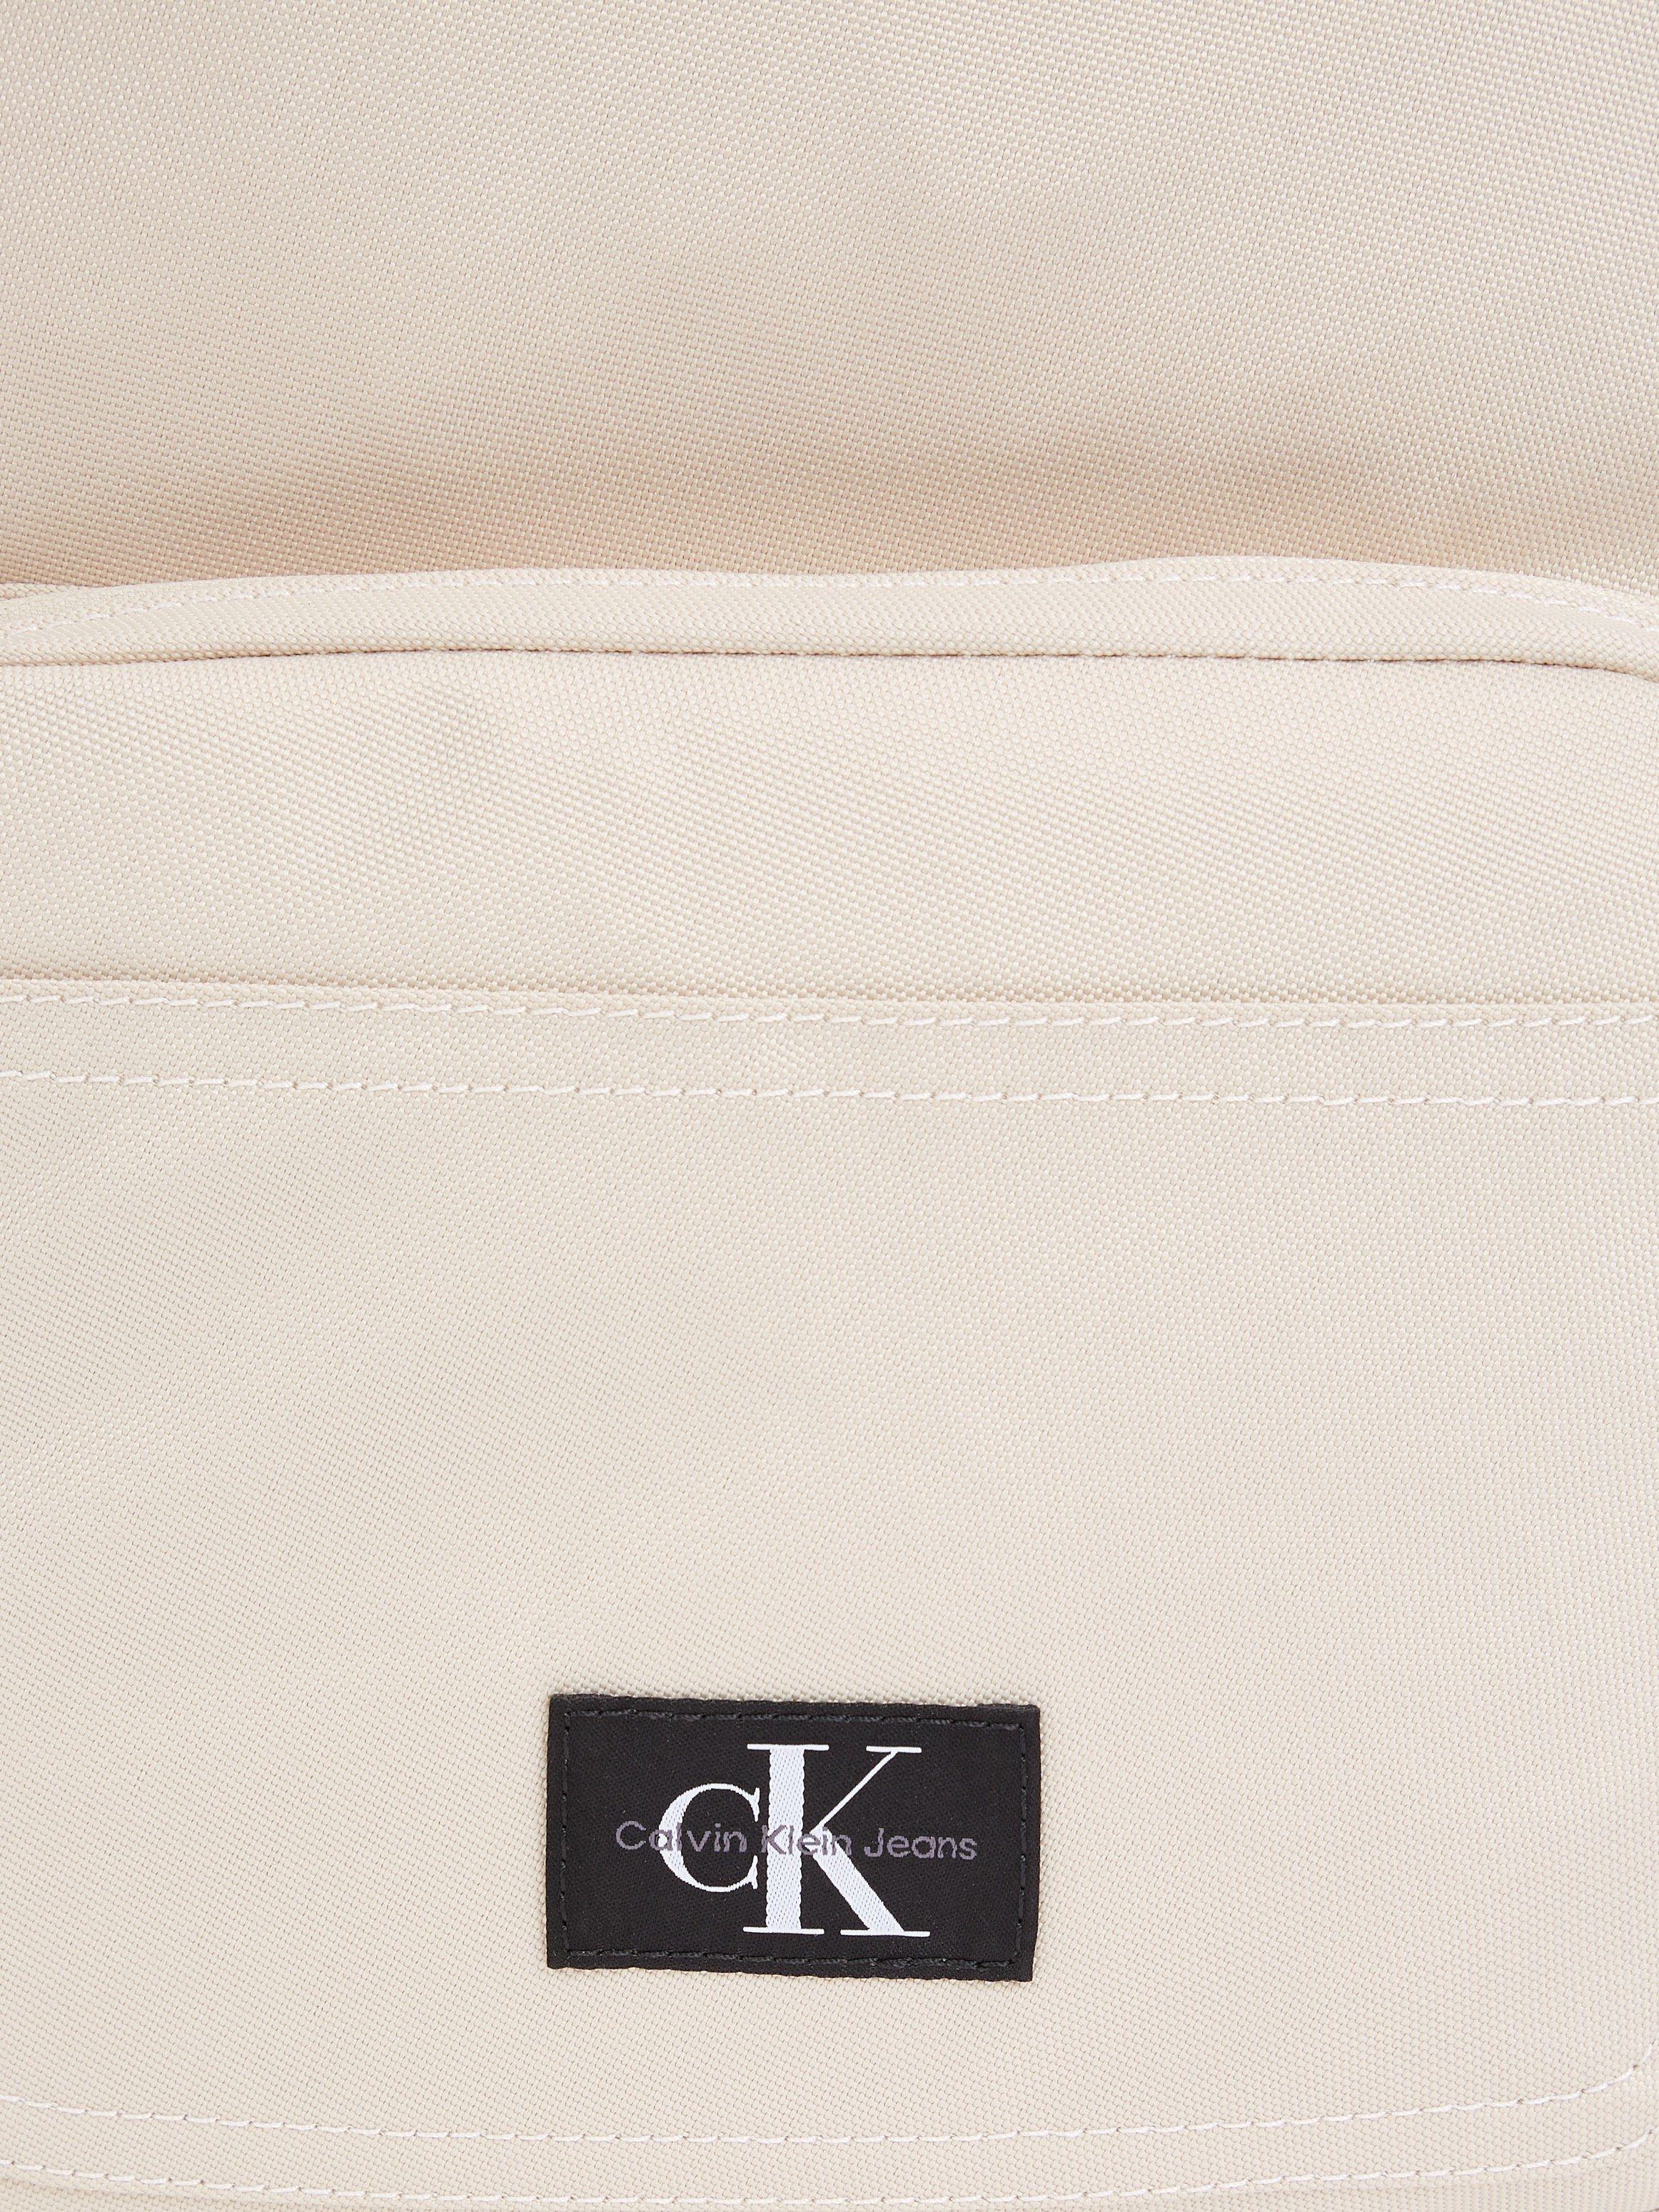 Calvin Klein Jeans Cityrucksack in BP40 beige W, ESSENTIALS CAMPUS Design SPORT dezentem